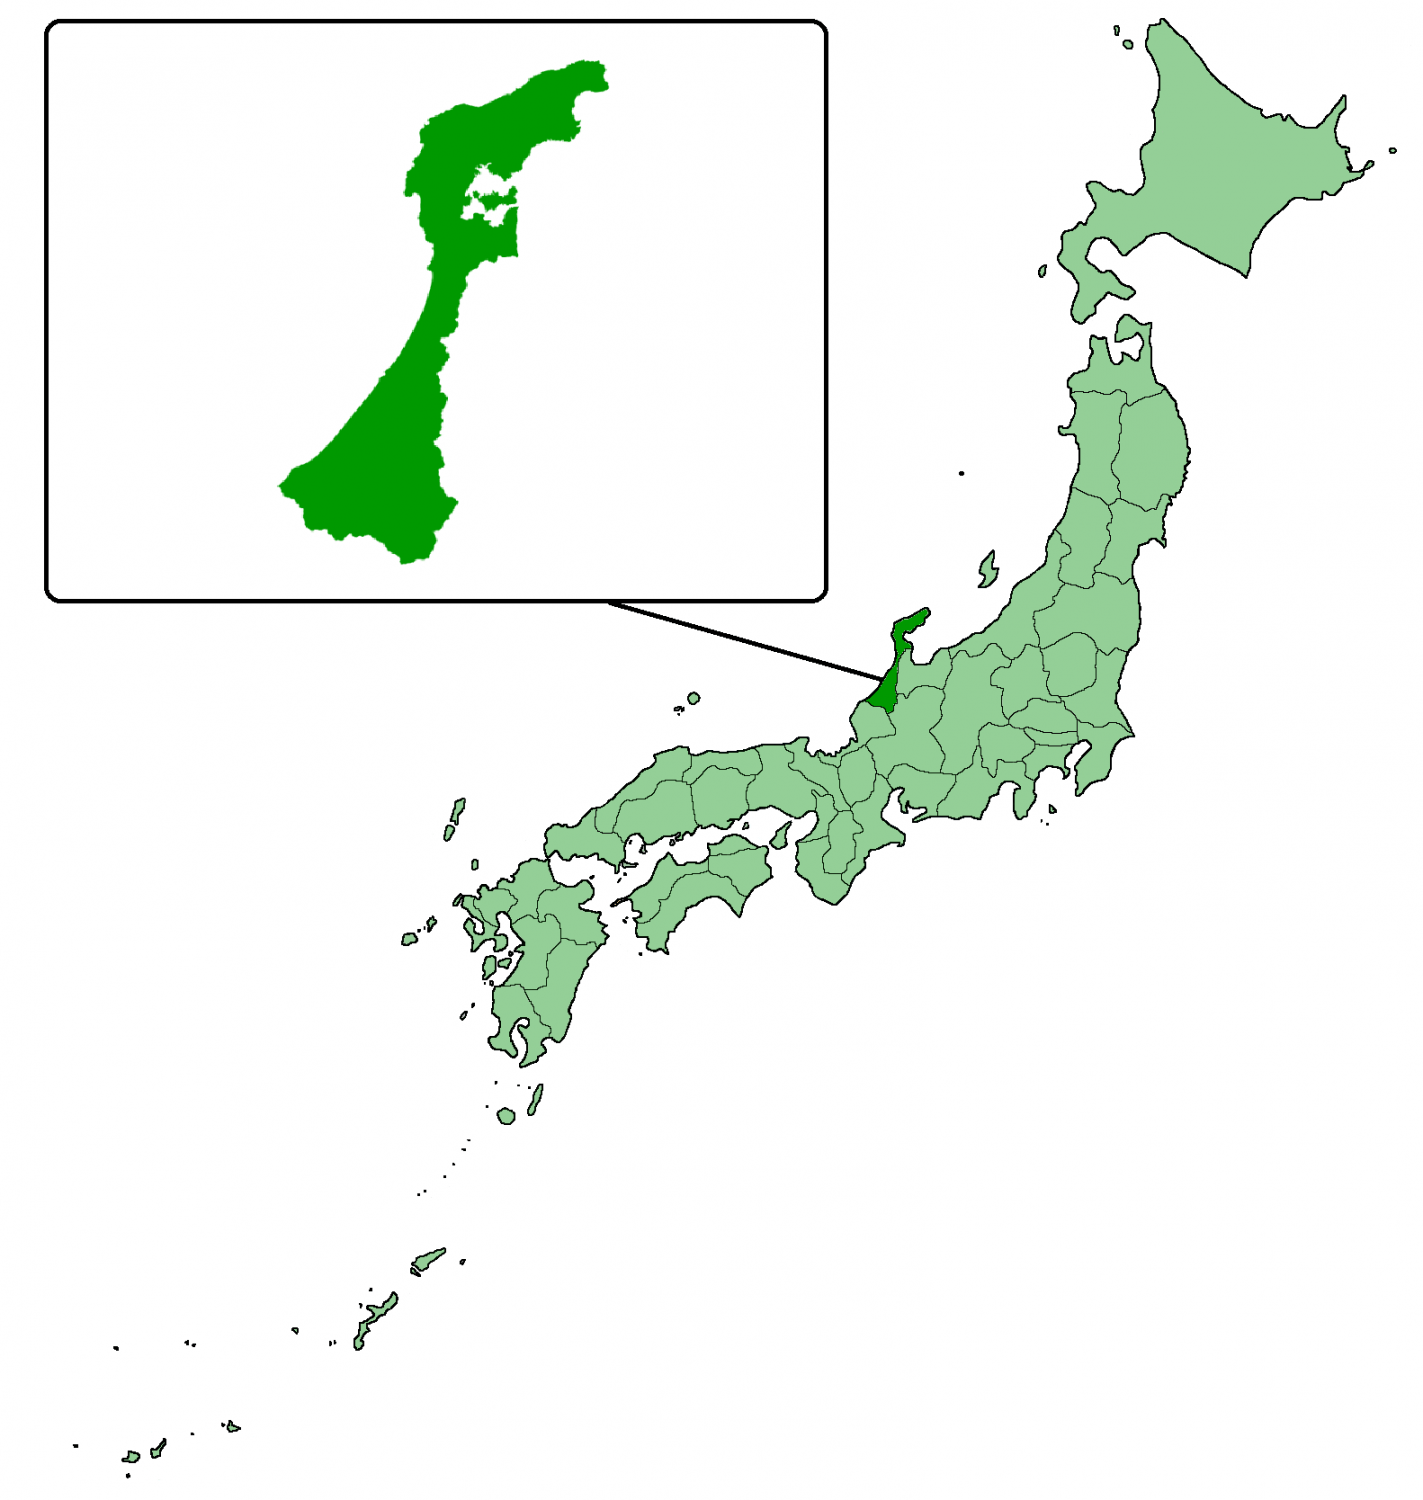 Ishikawa